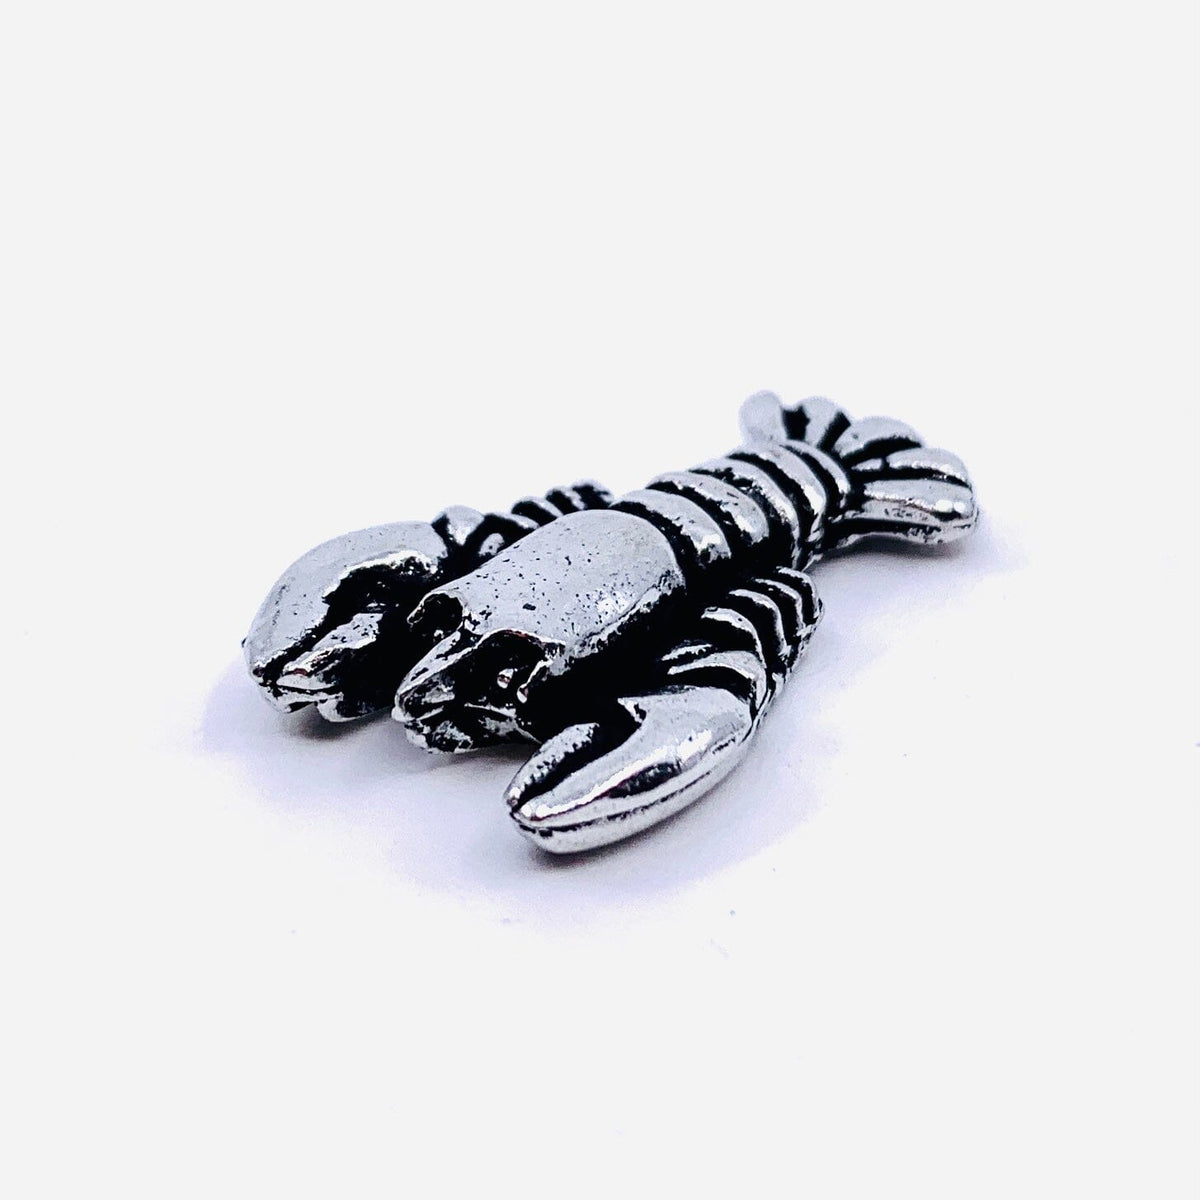 Miniature Pewter Figurine, Lobster Miniature Basic Spirit 